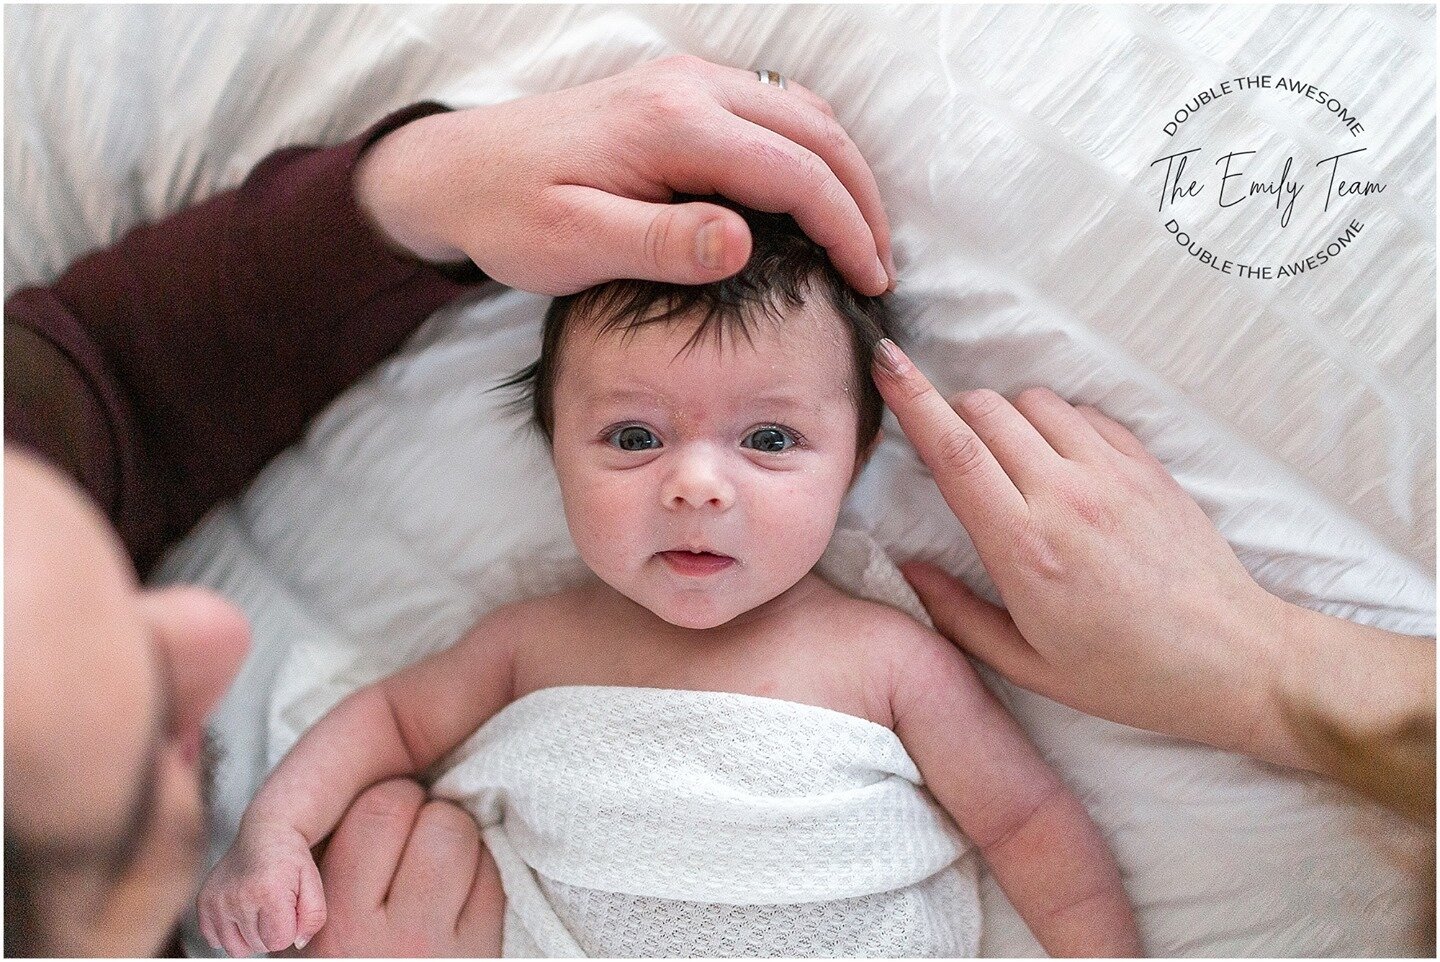 Lovely little Lillith's Blog Post: ⁠
⁠
www.emilyhallphotography.com/blog/2021/1/31/lillith-6-weeks-new⁠
⁠
#reallife #reallove #newbornphotography #newborn #newbornphotographer #babyphotography #baby #newbornbaby #photography #babygirl #fresh #familyp